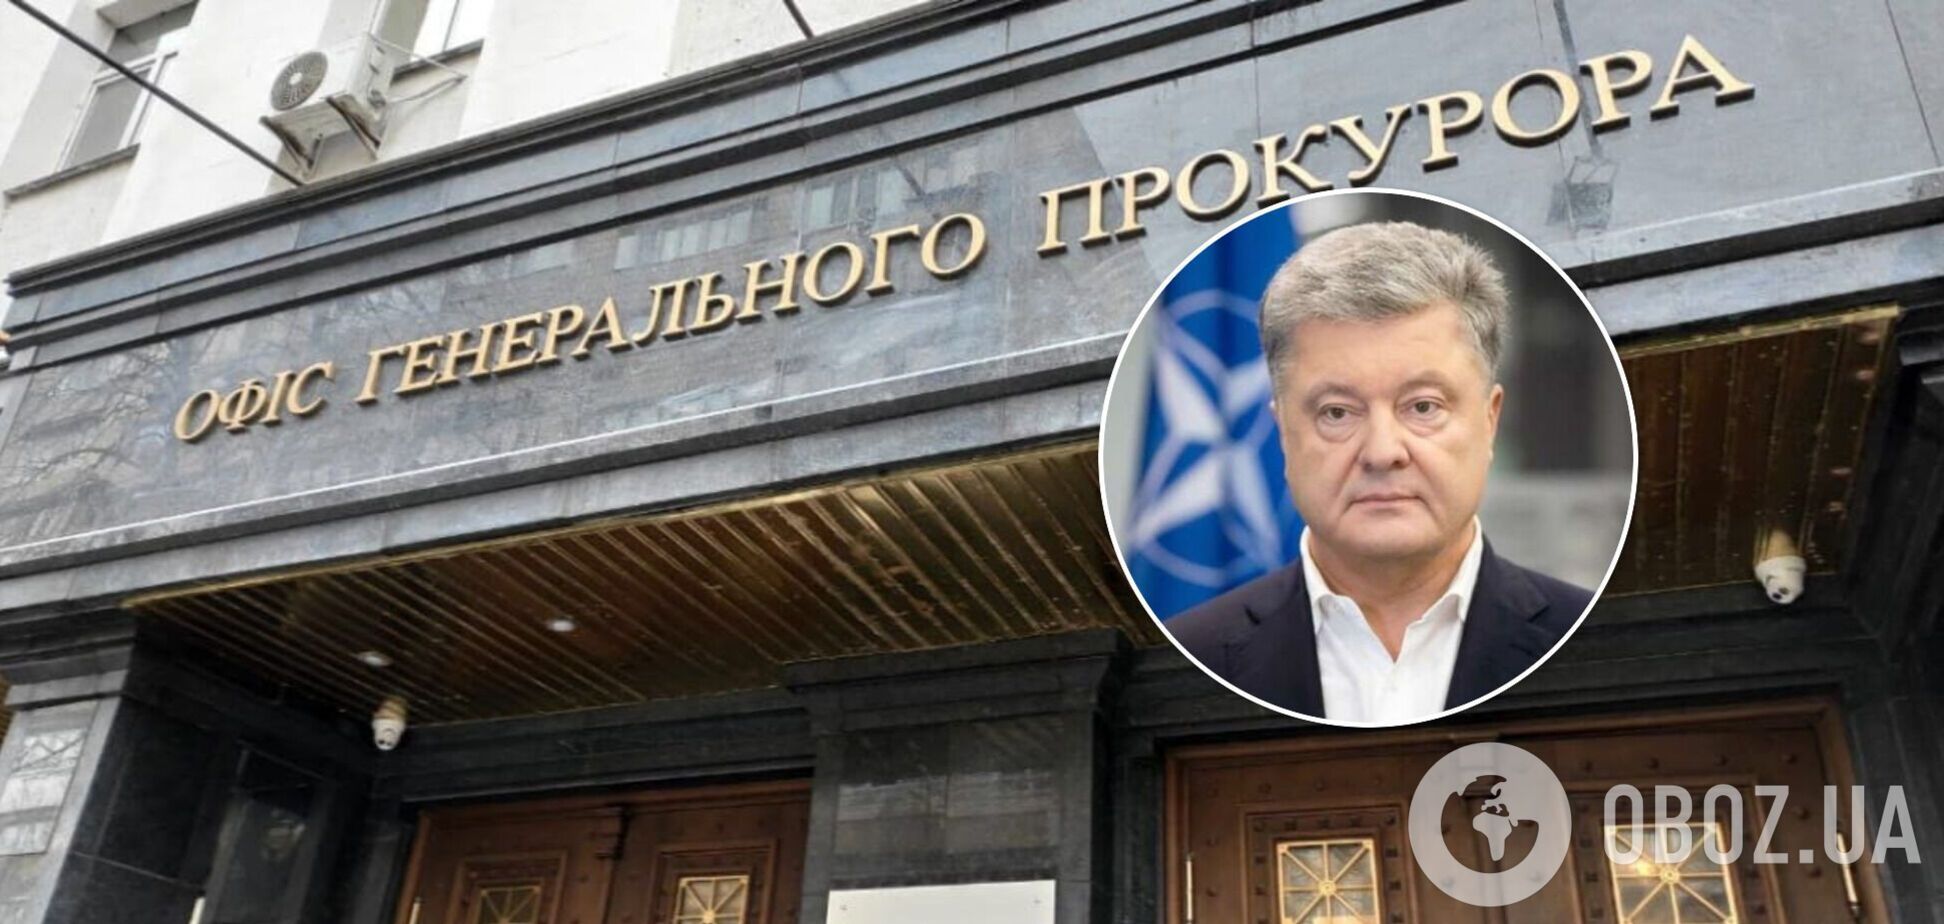 Европейский Конгресс Украинцев о деле против Порошенко: имеет признаки выборочного правосудия